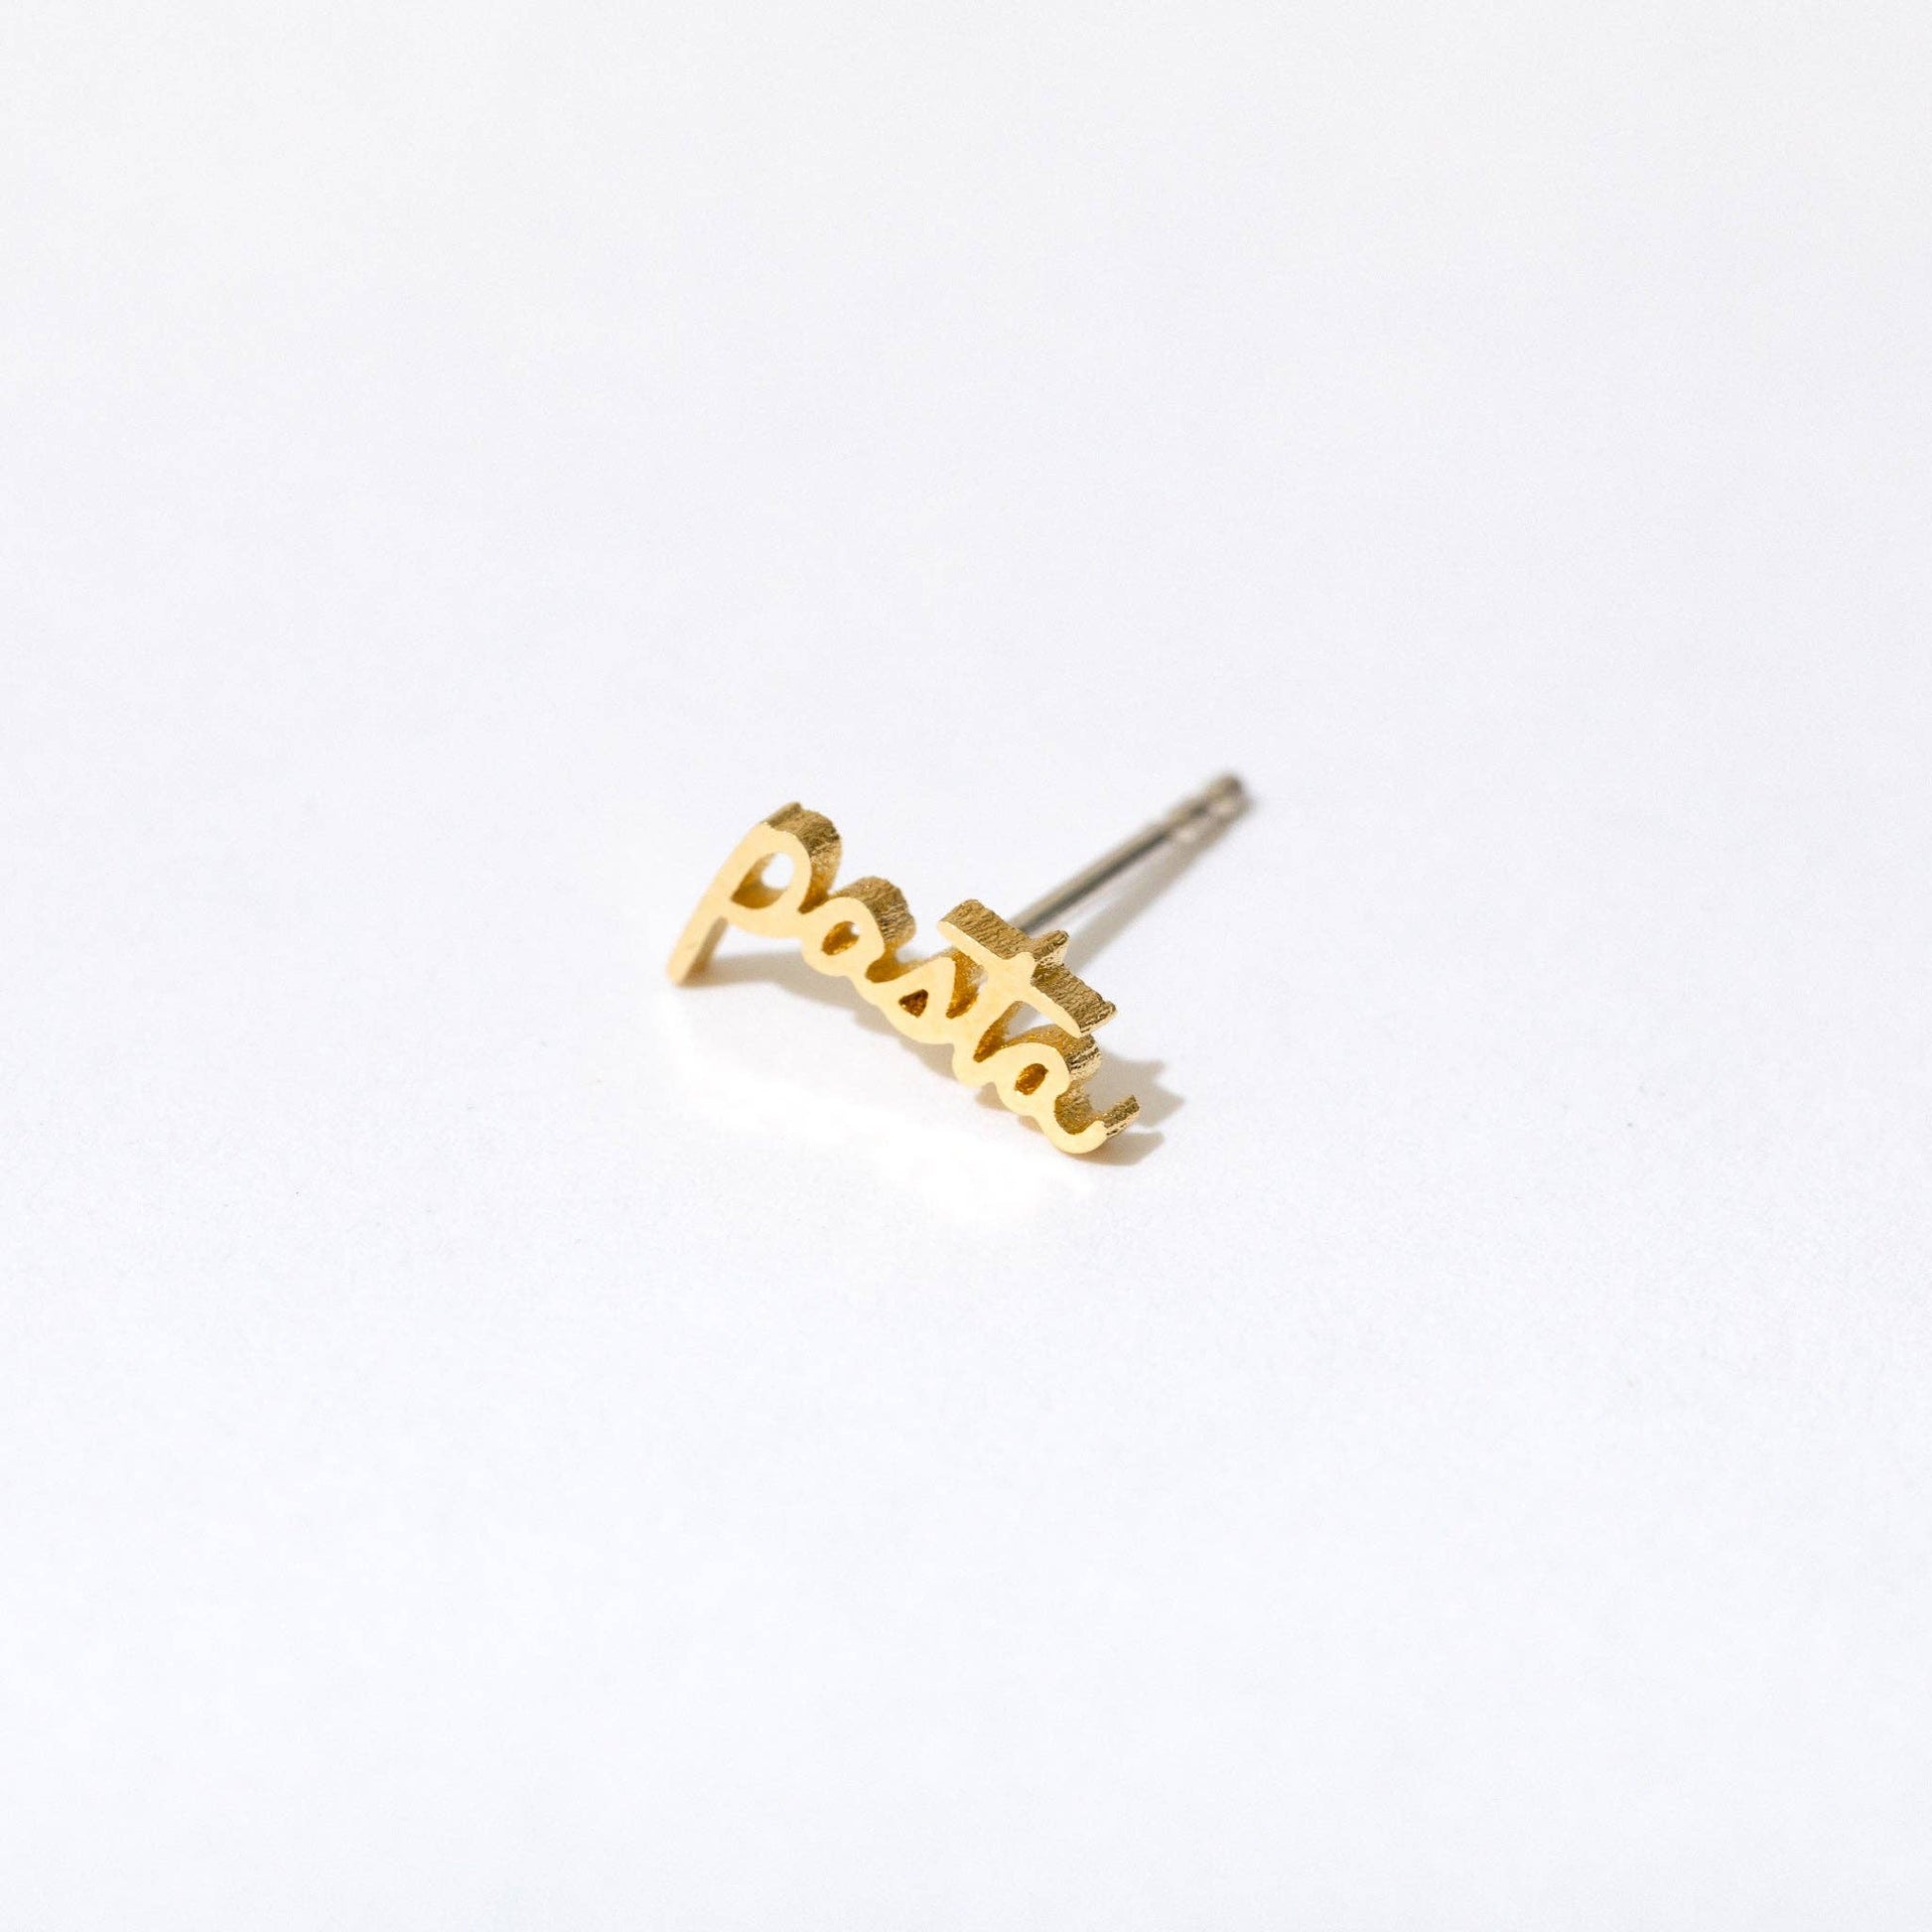 Single 14k gold plated stud earring -- reads "pasta" in handwritten script